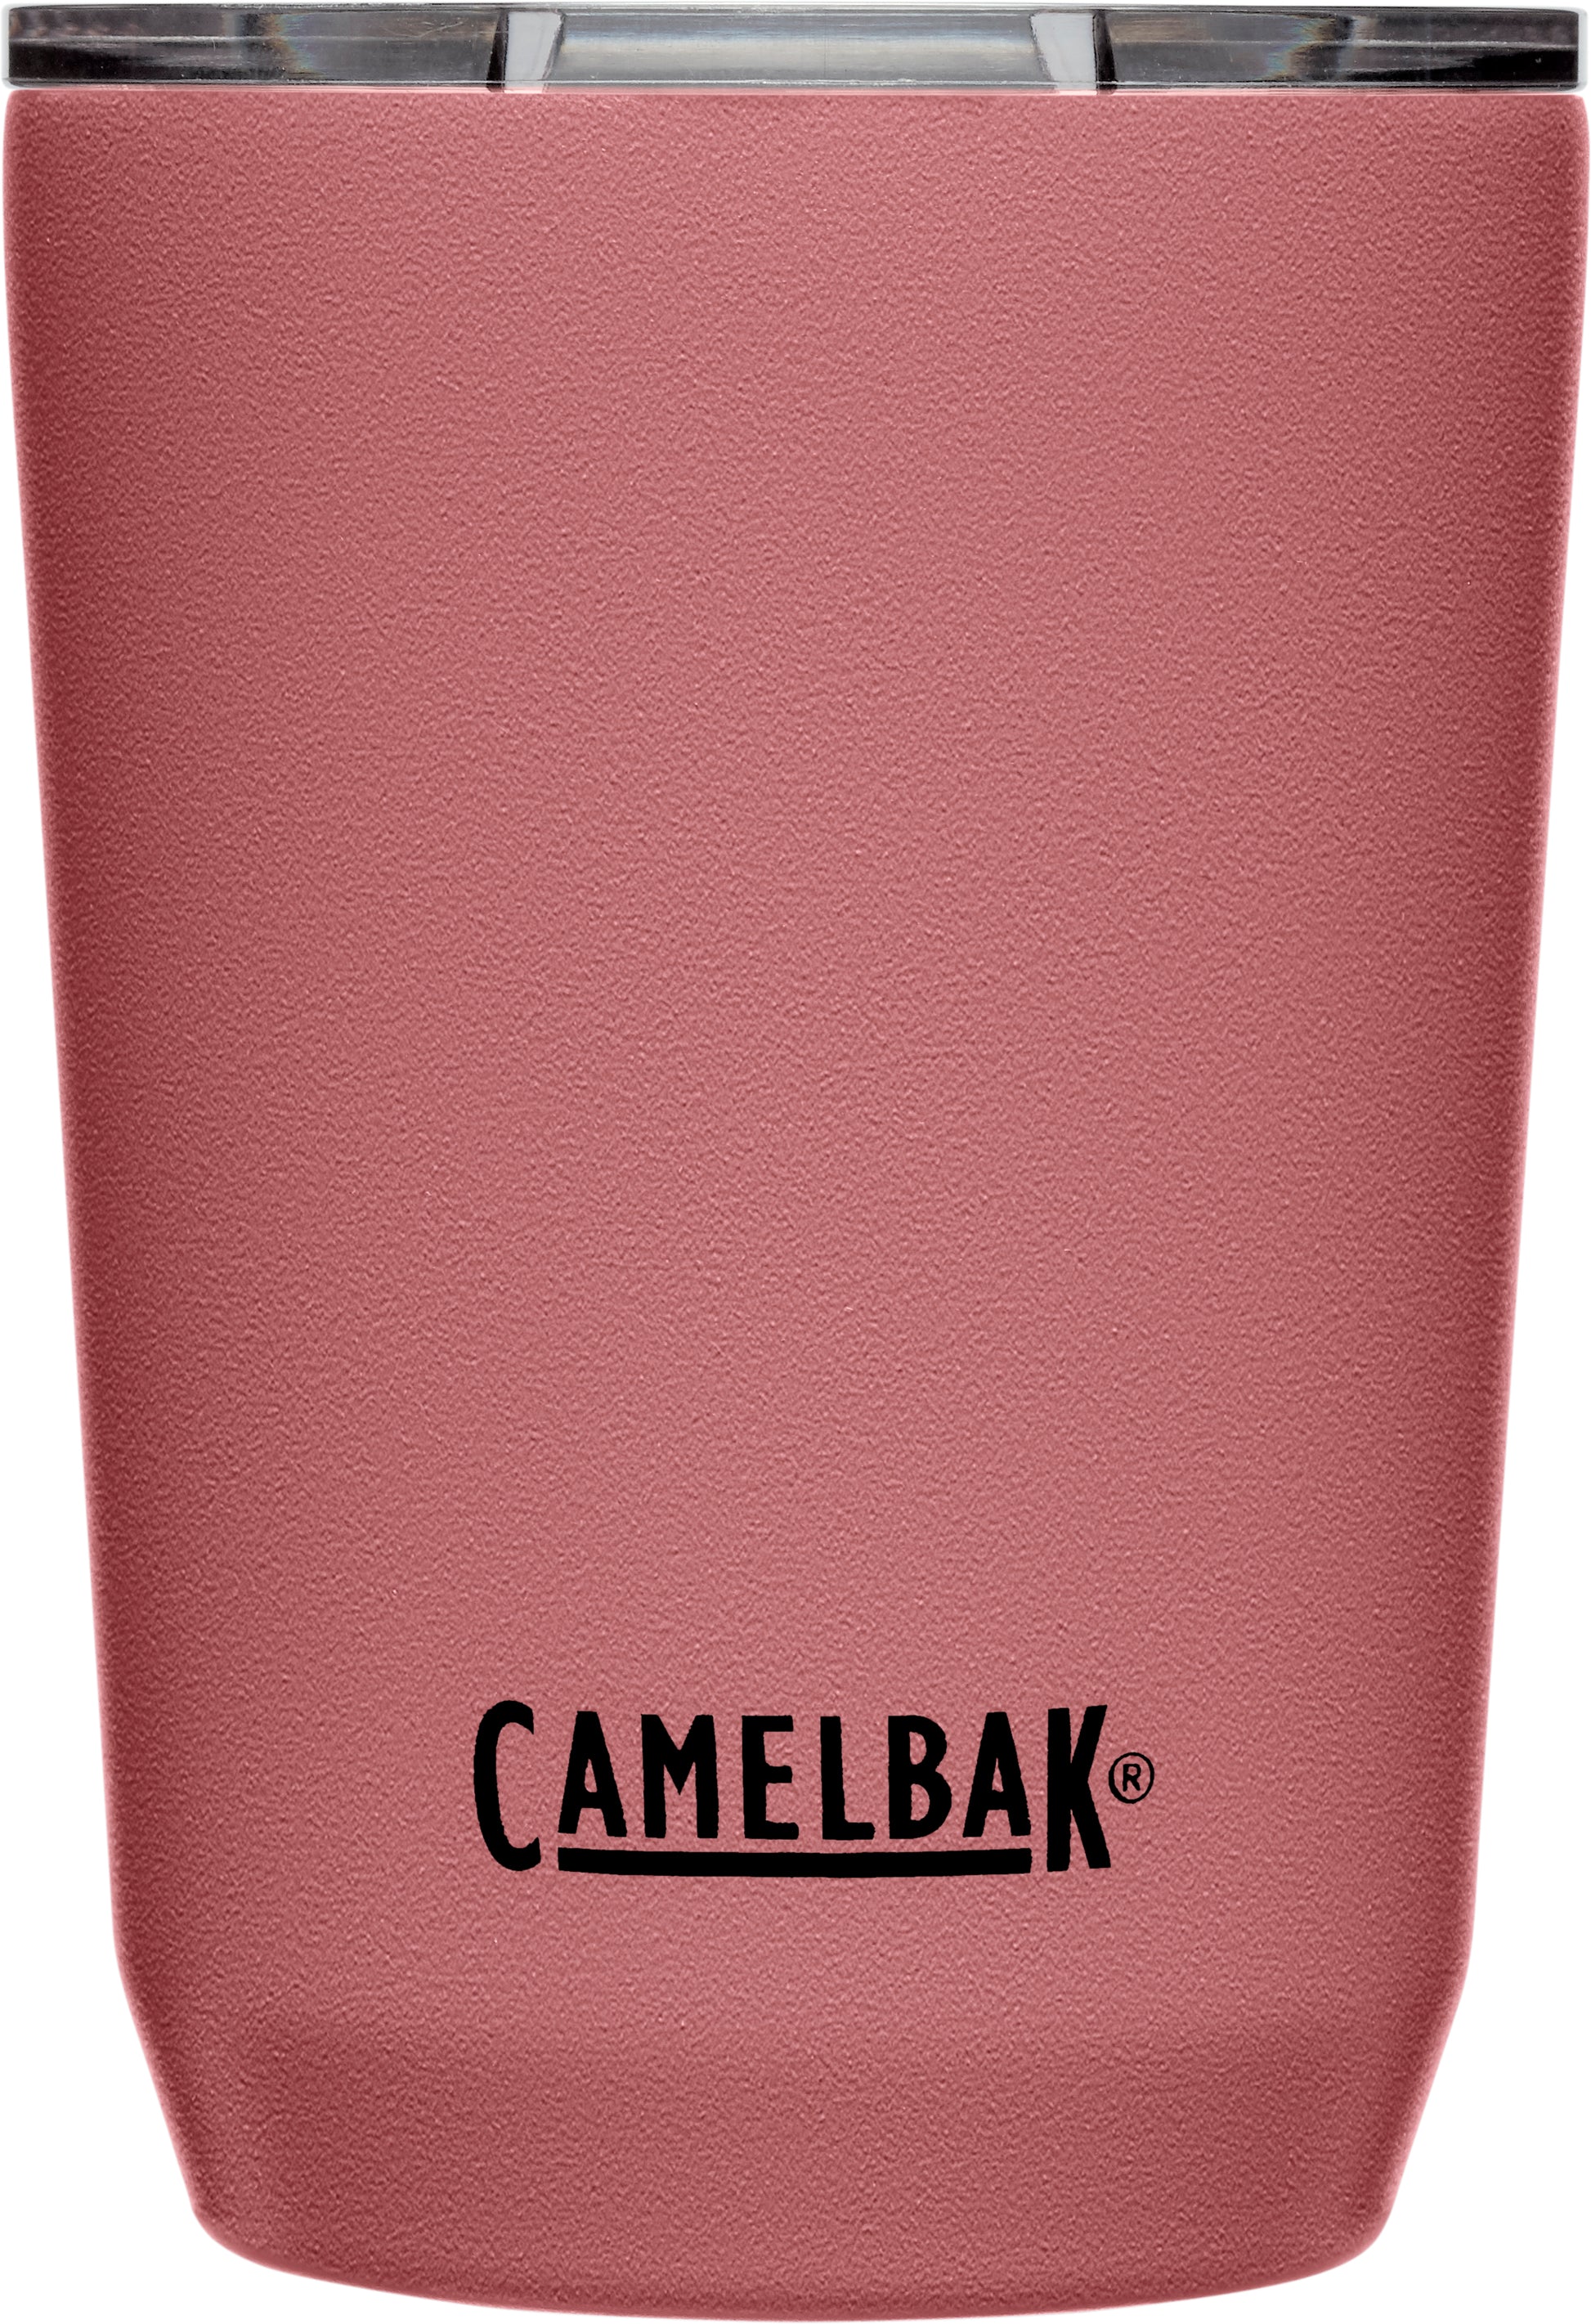 CamelBak Horizon 12 oz Tumbler - Insulated Stainless Steel - Tri